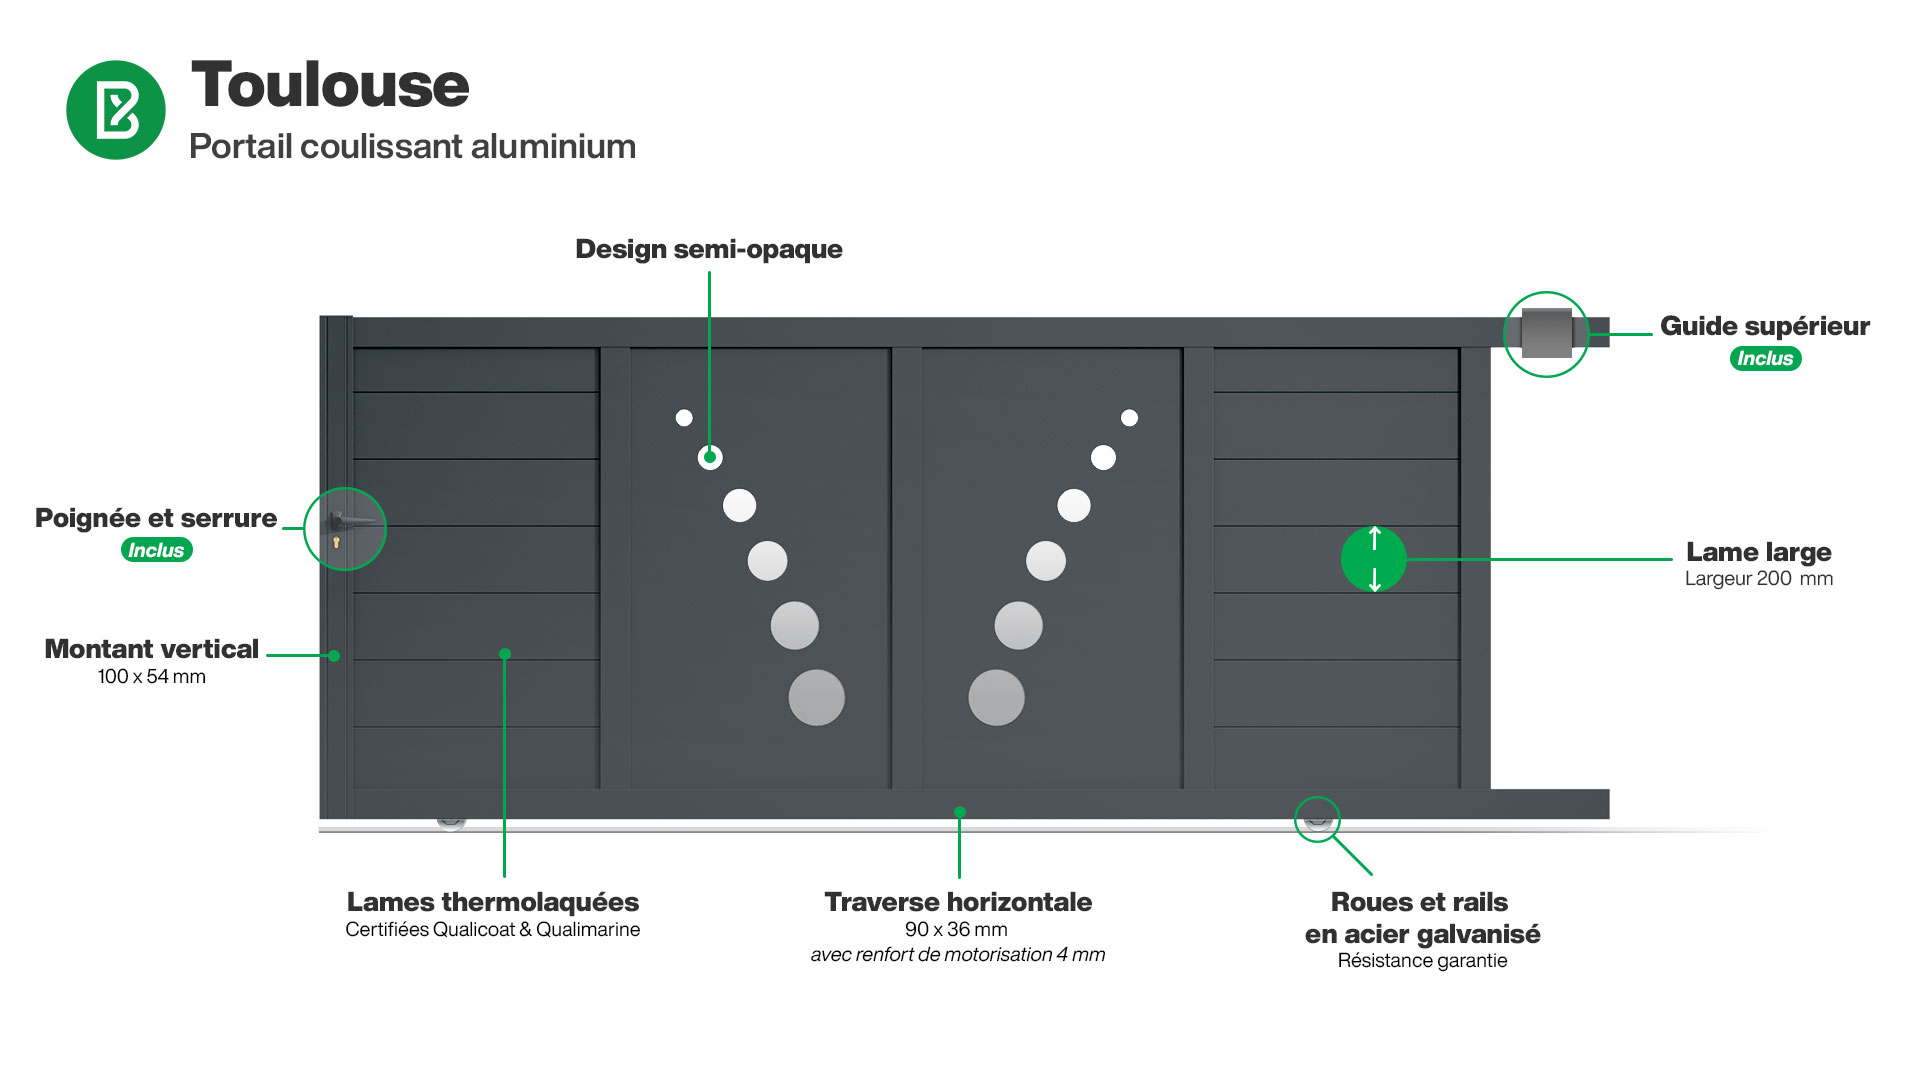 Portail : Infographie d'un portail coulissant aluminium modèle TOULOUSE